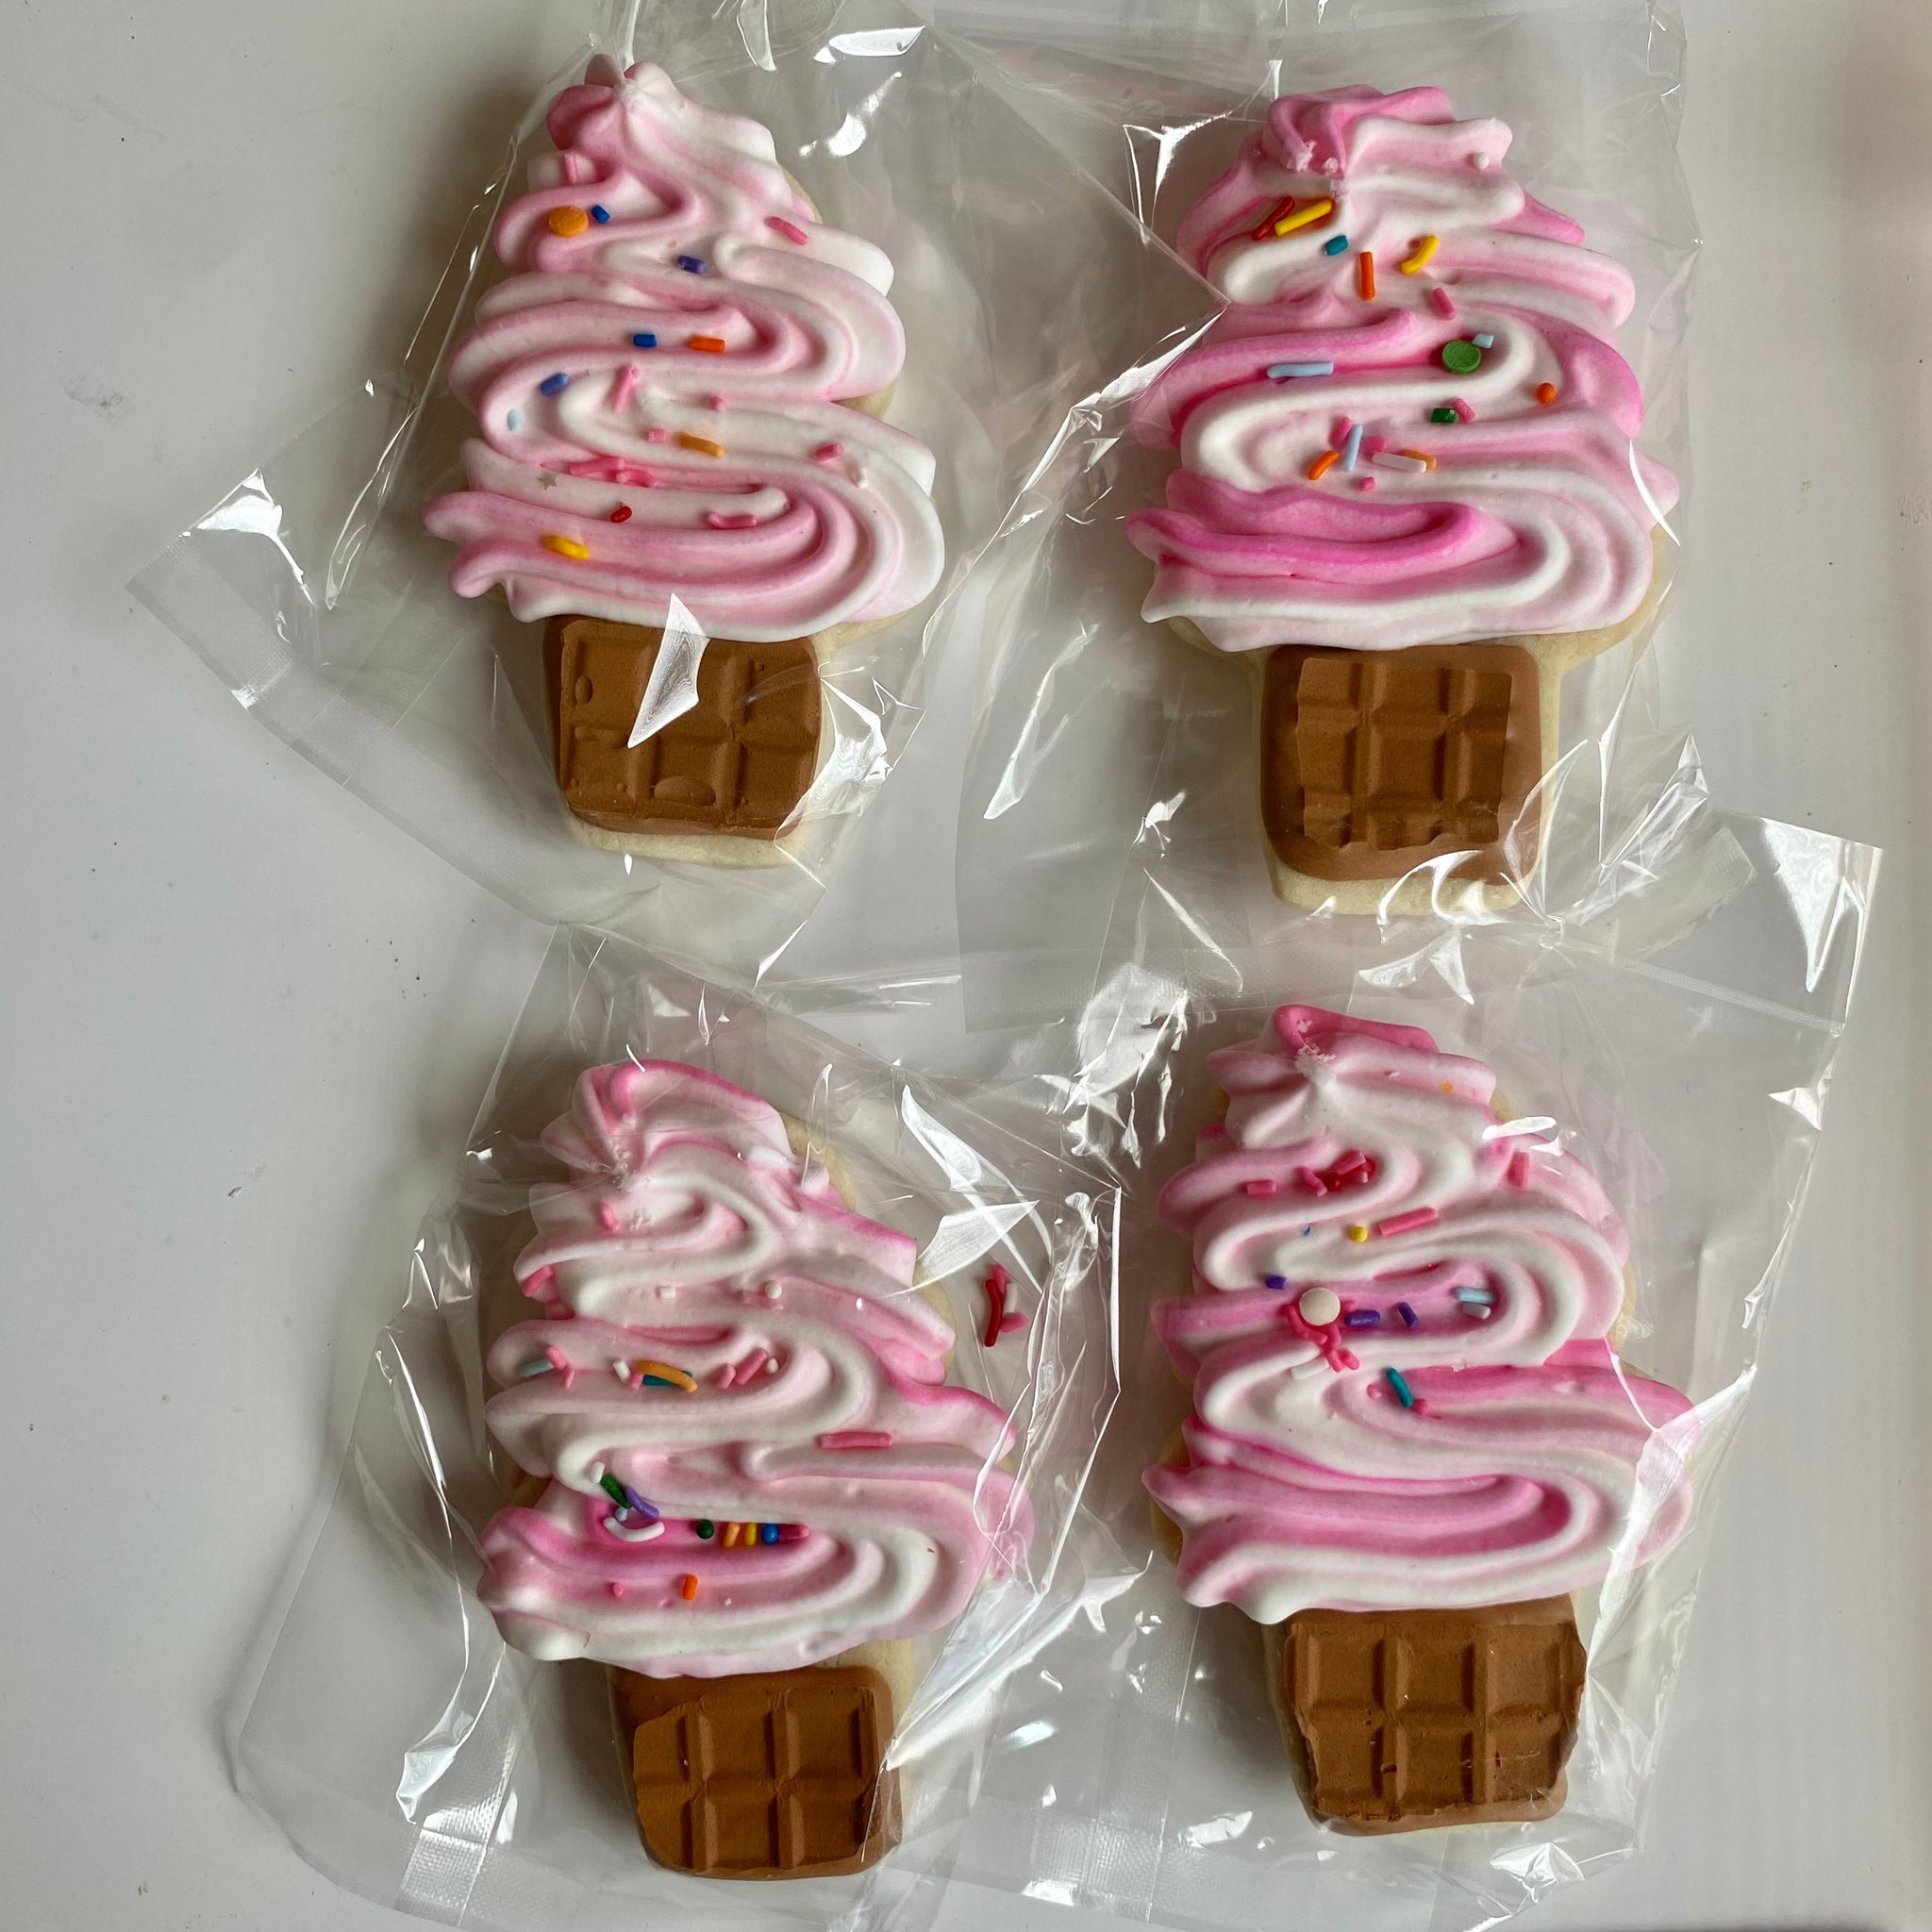 Individual Cookies